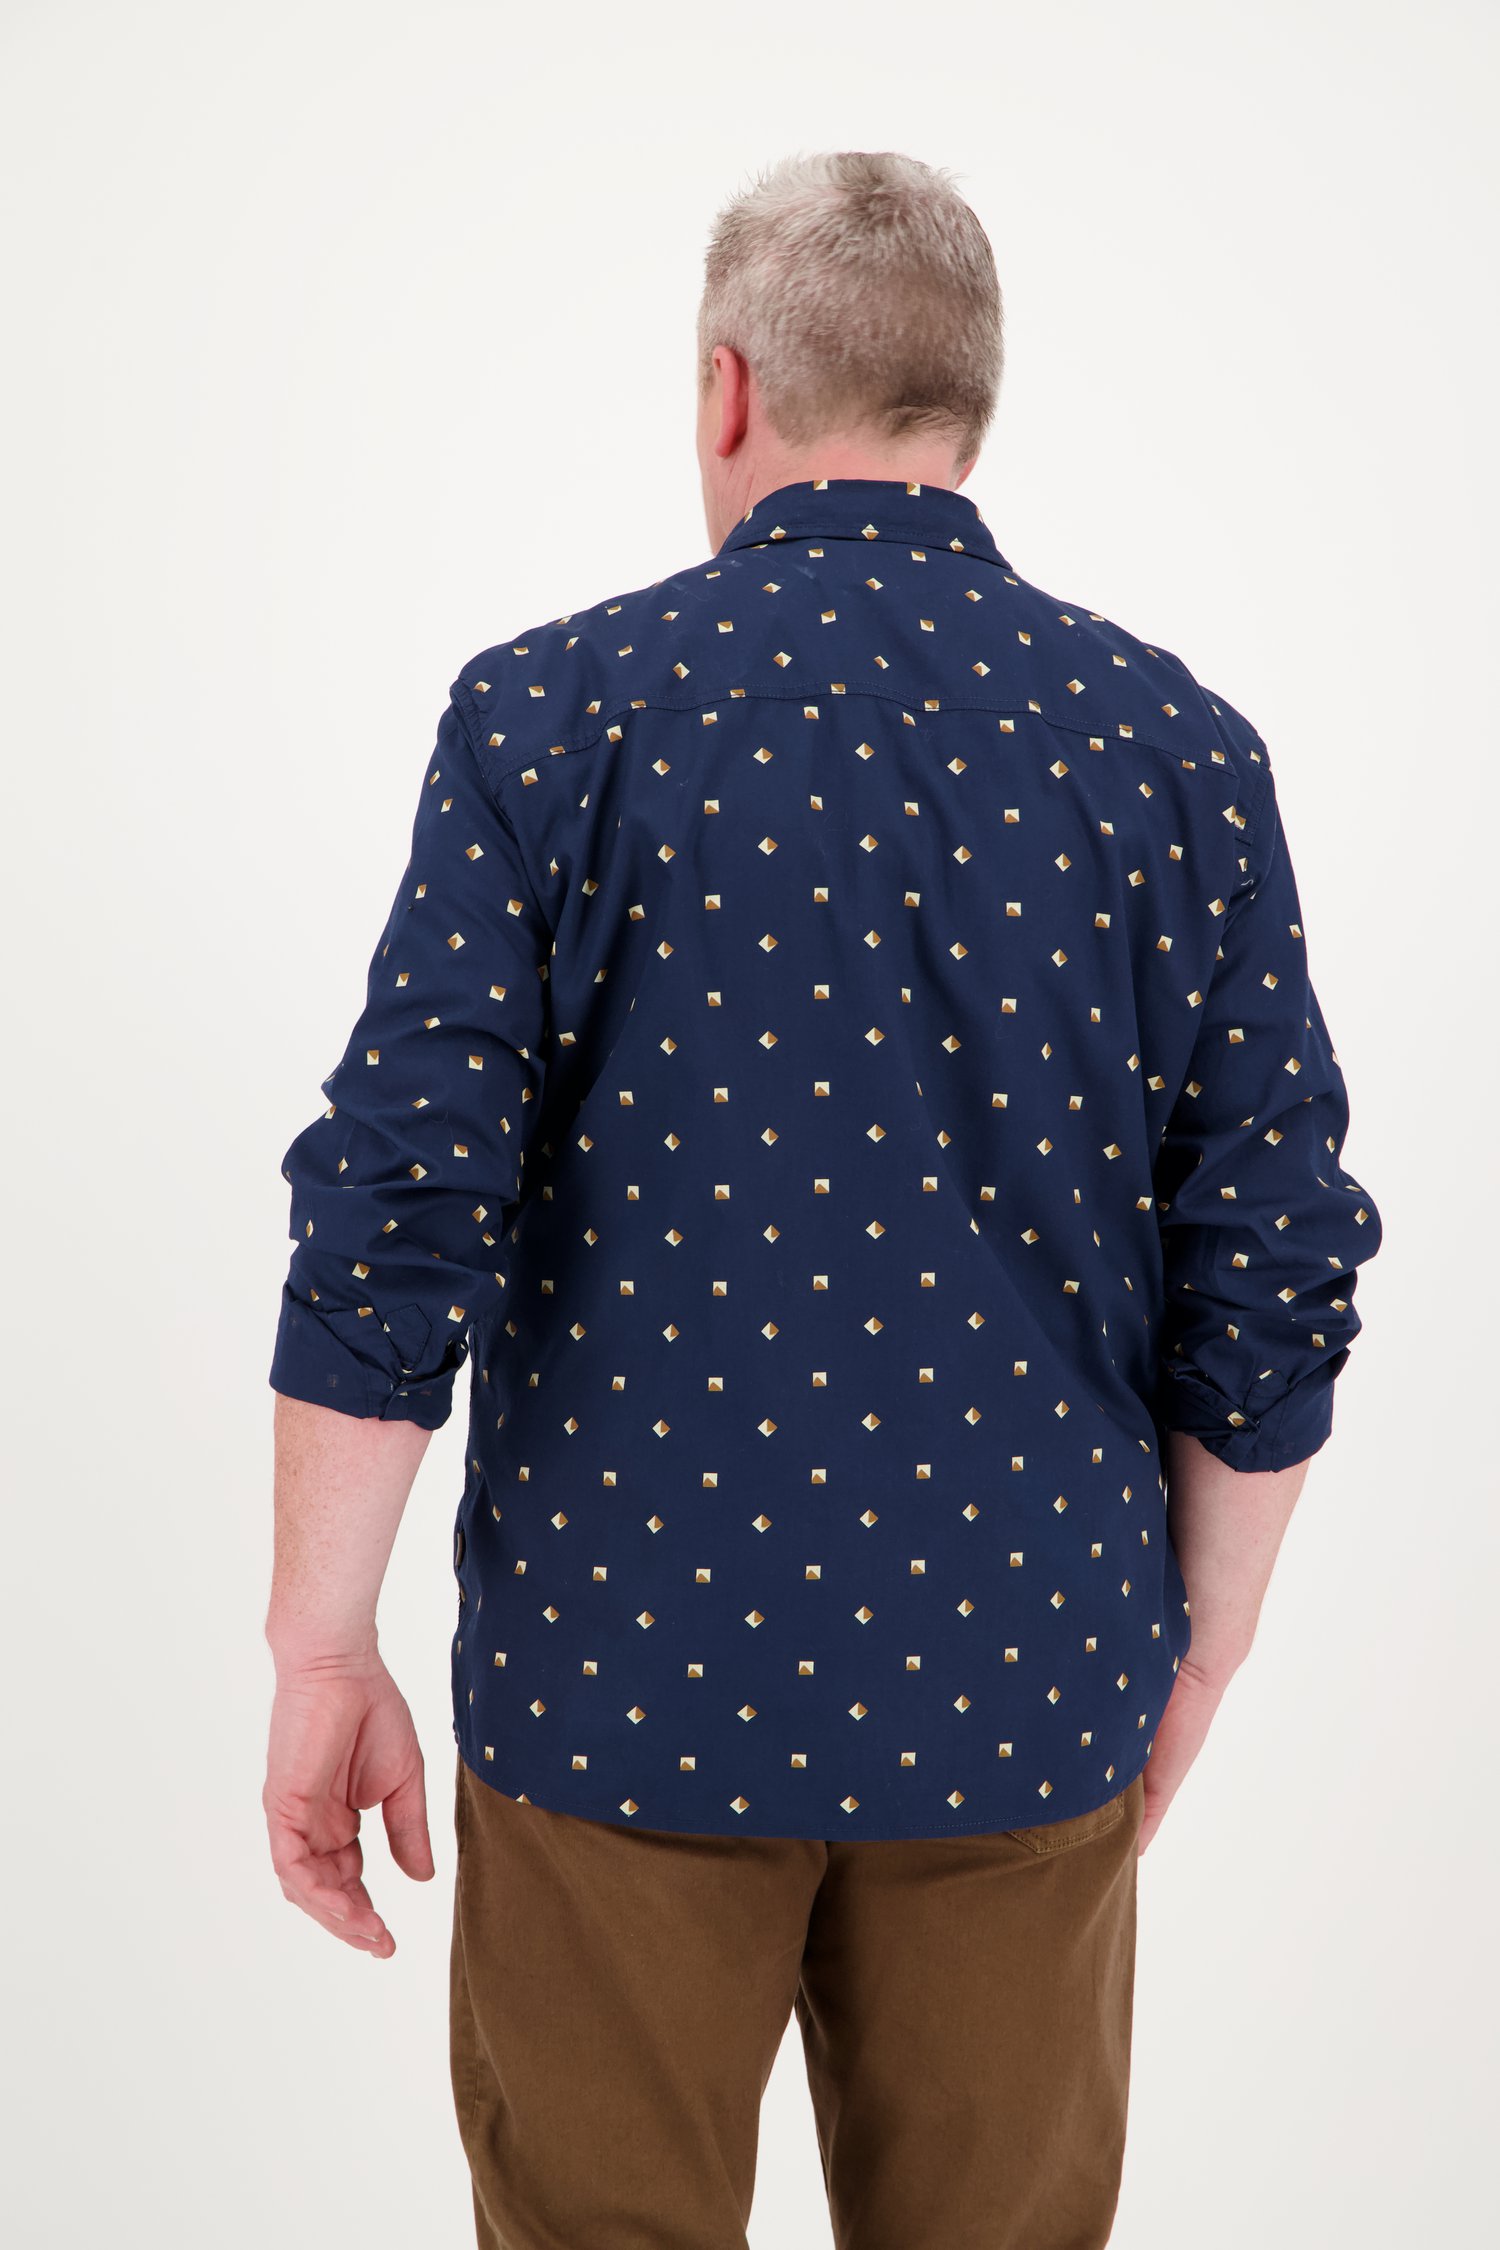 baan Beheer Misbruik Donkerblauw hemd met patroon - comfort fit van Jefferson | 9685852 | e5